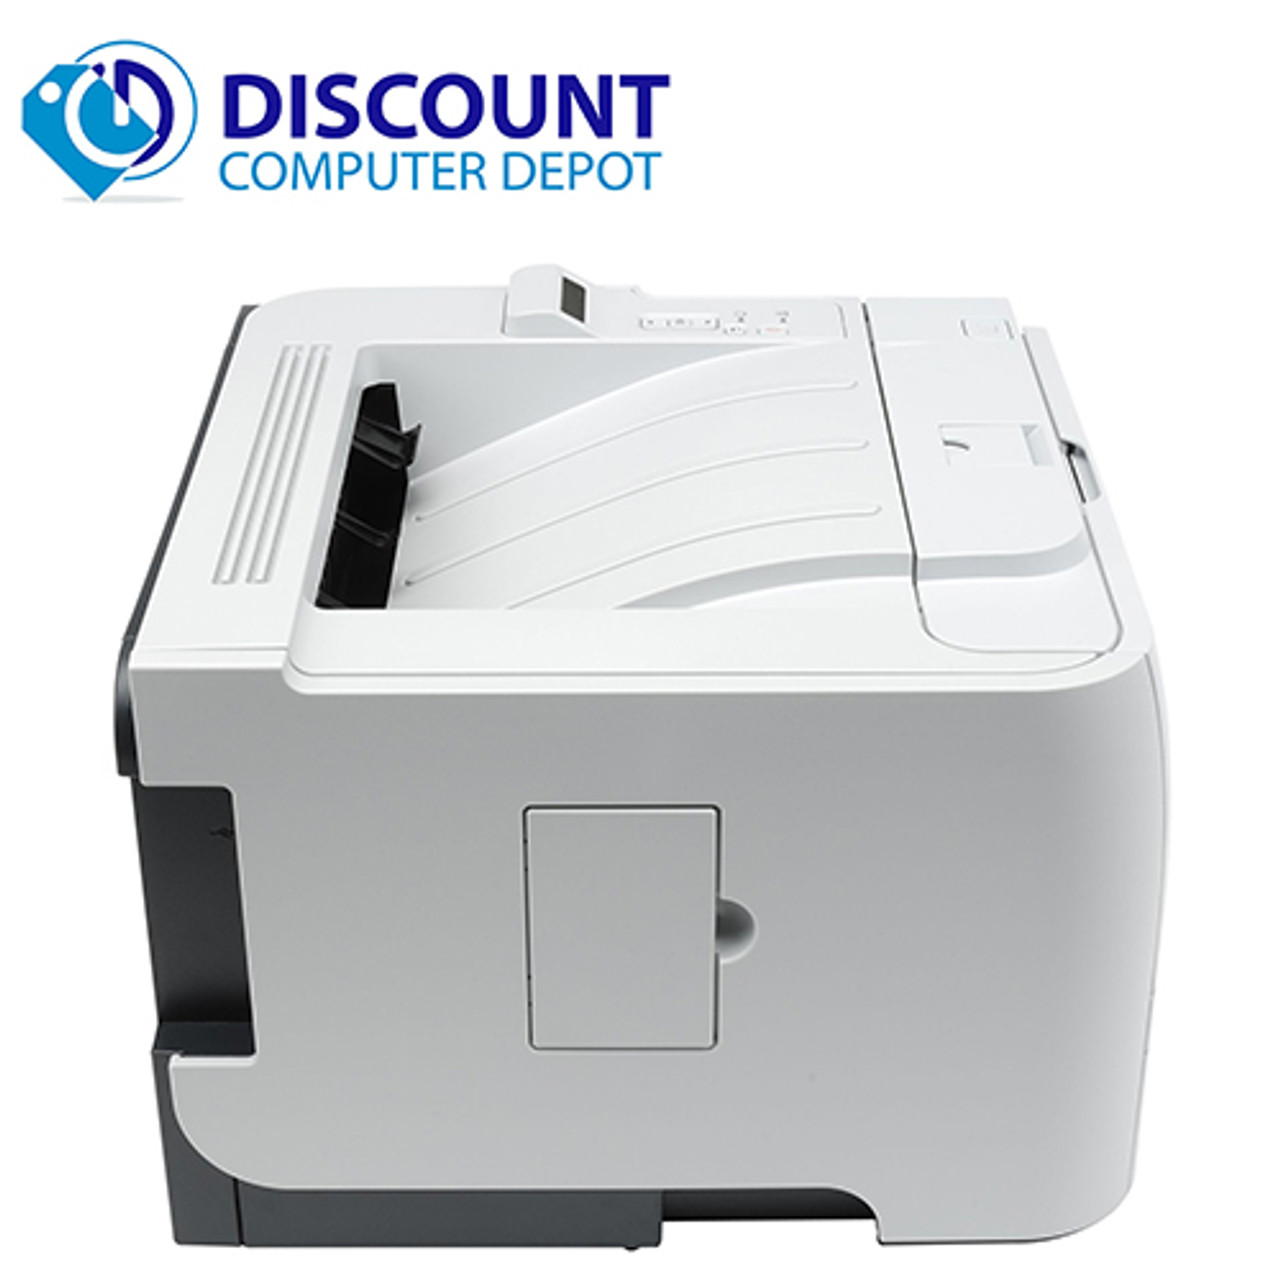 HP LaserJet P2055 dn Monochrome Laser Printer